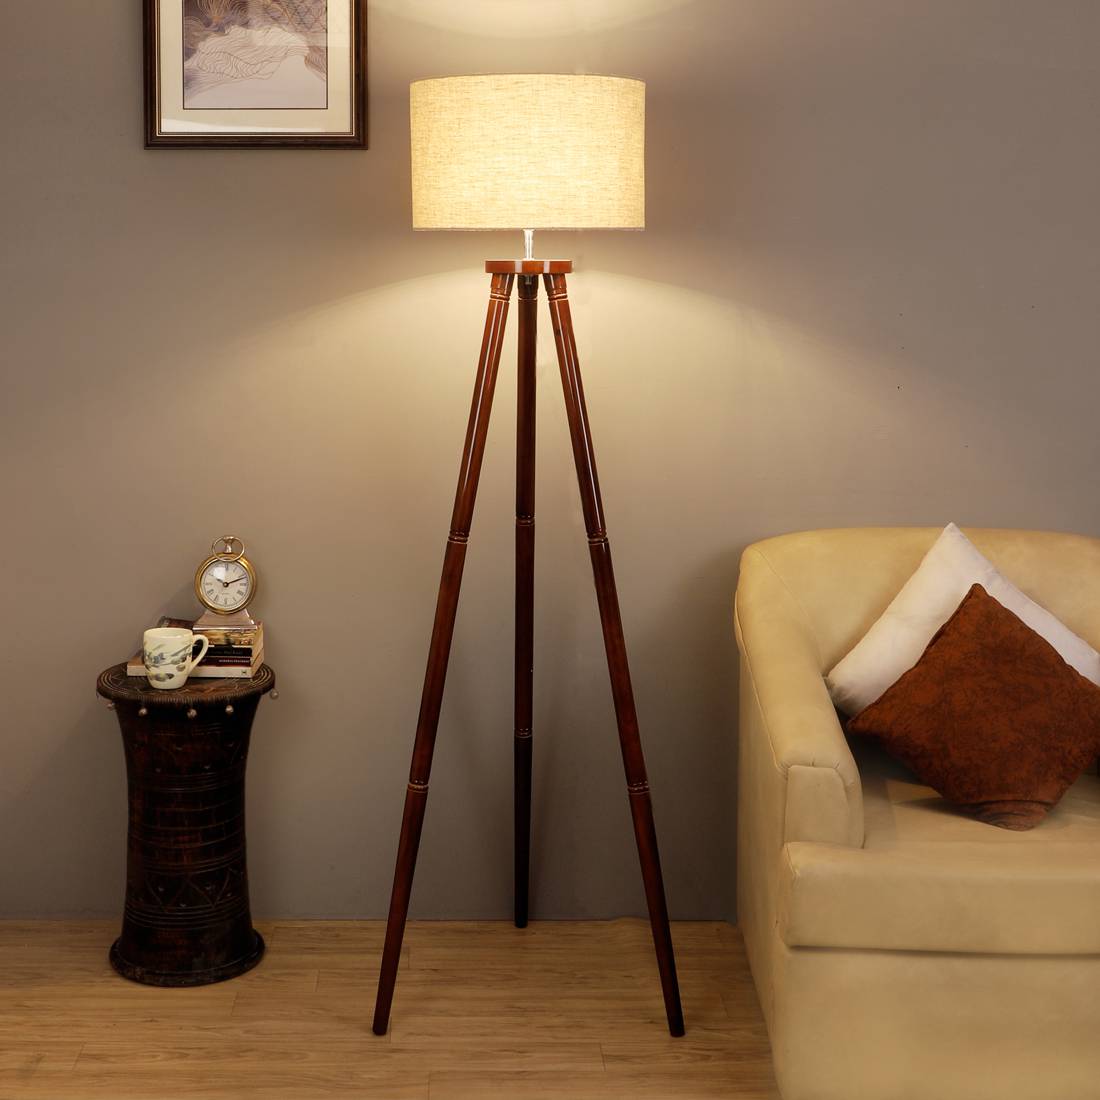 Buy Best Floor Lamps Online In India @Upto 50% Off - Urban Ladder